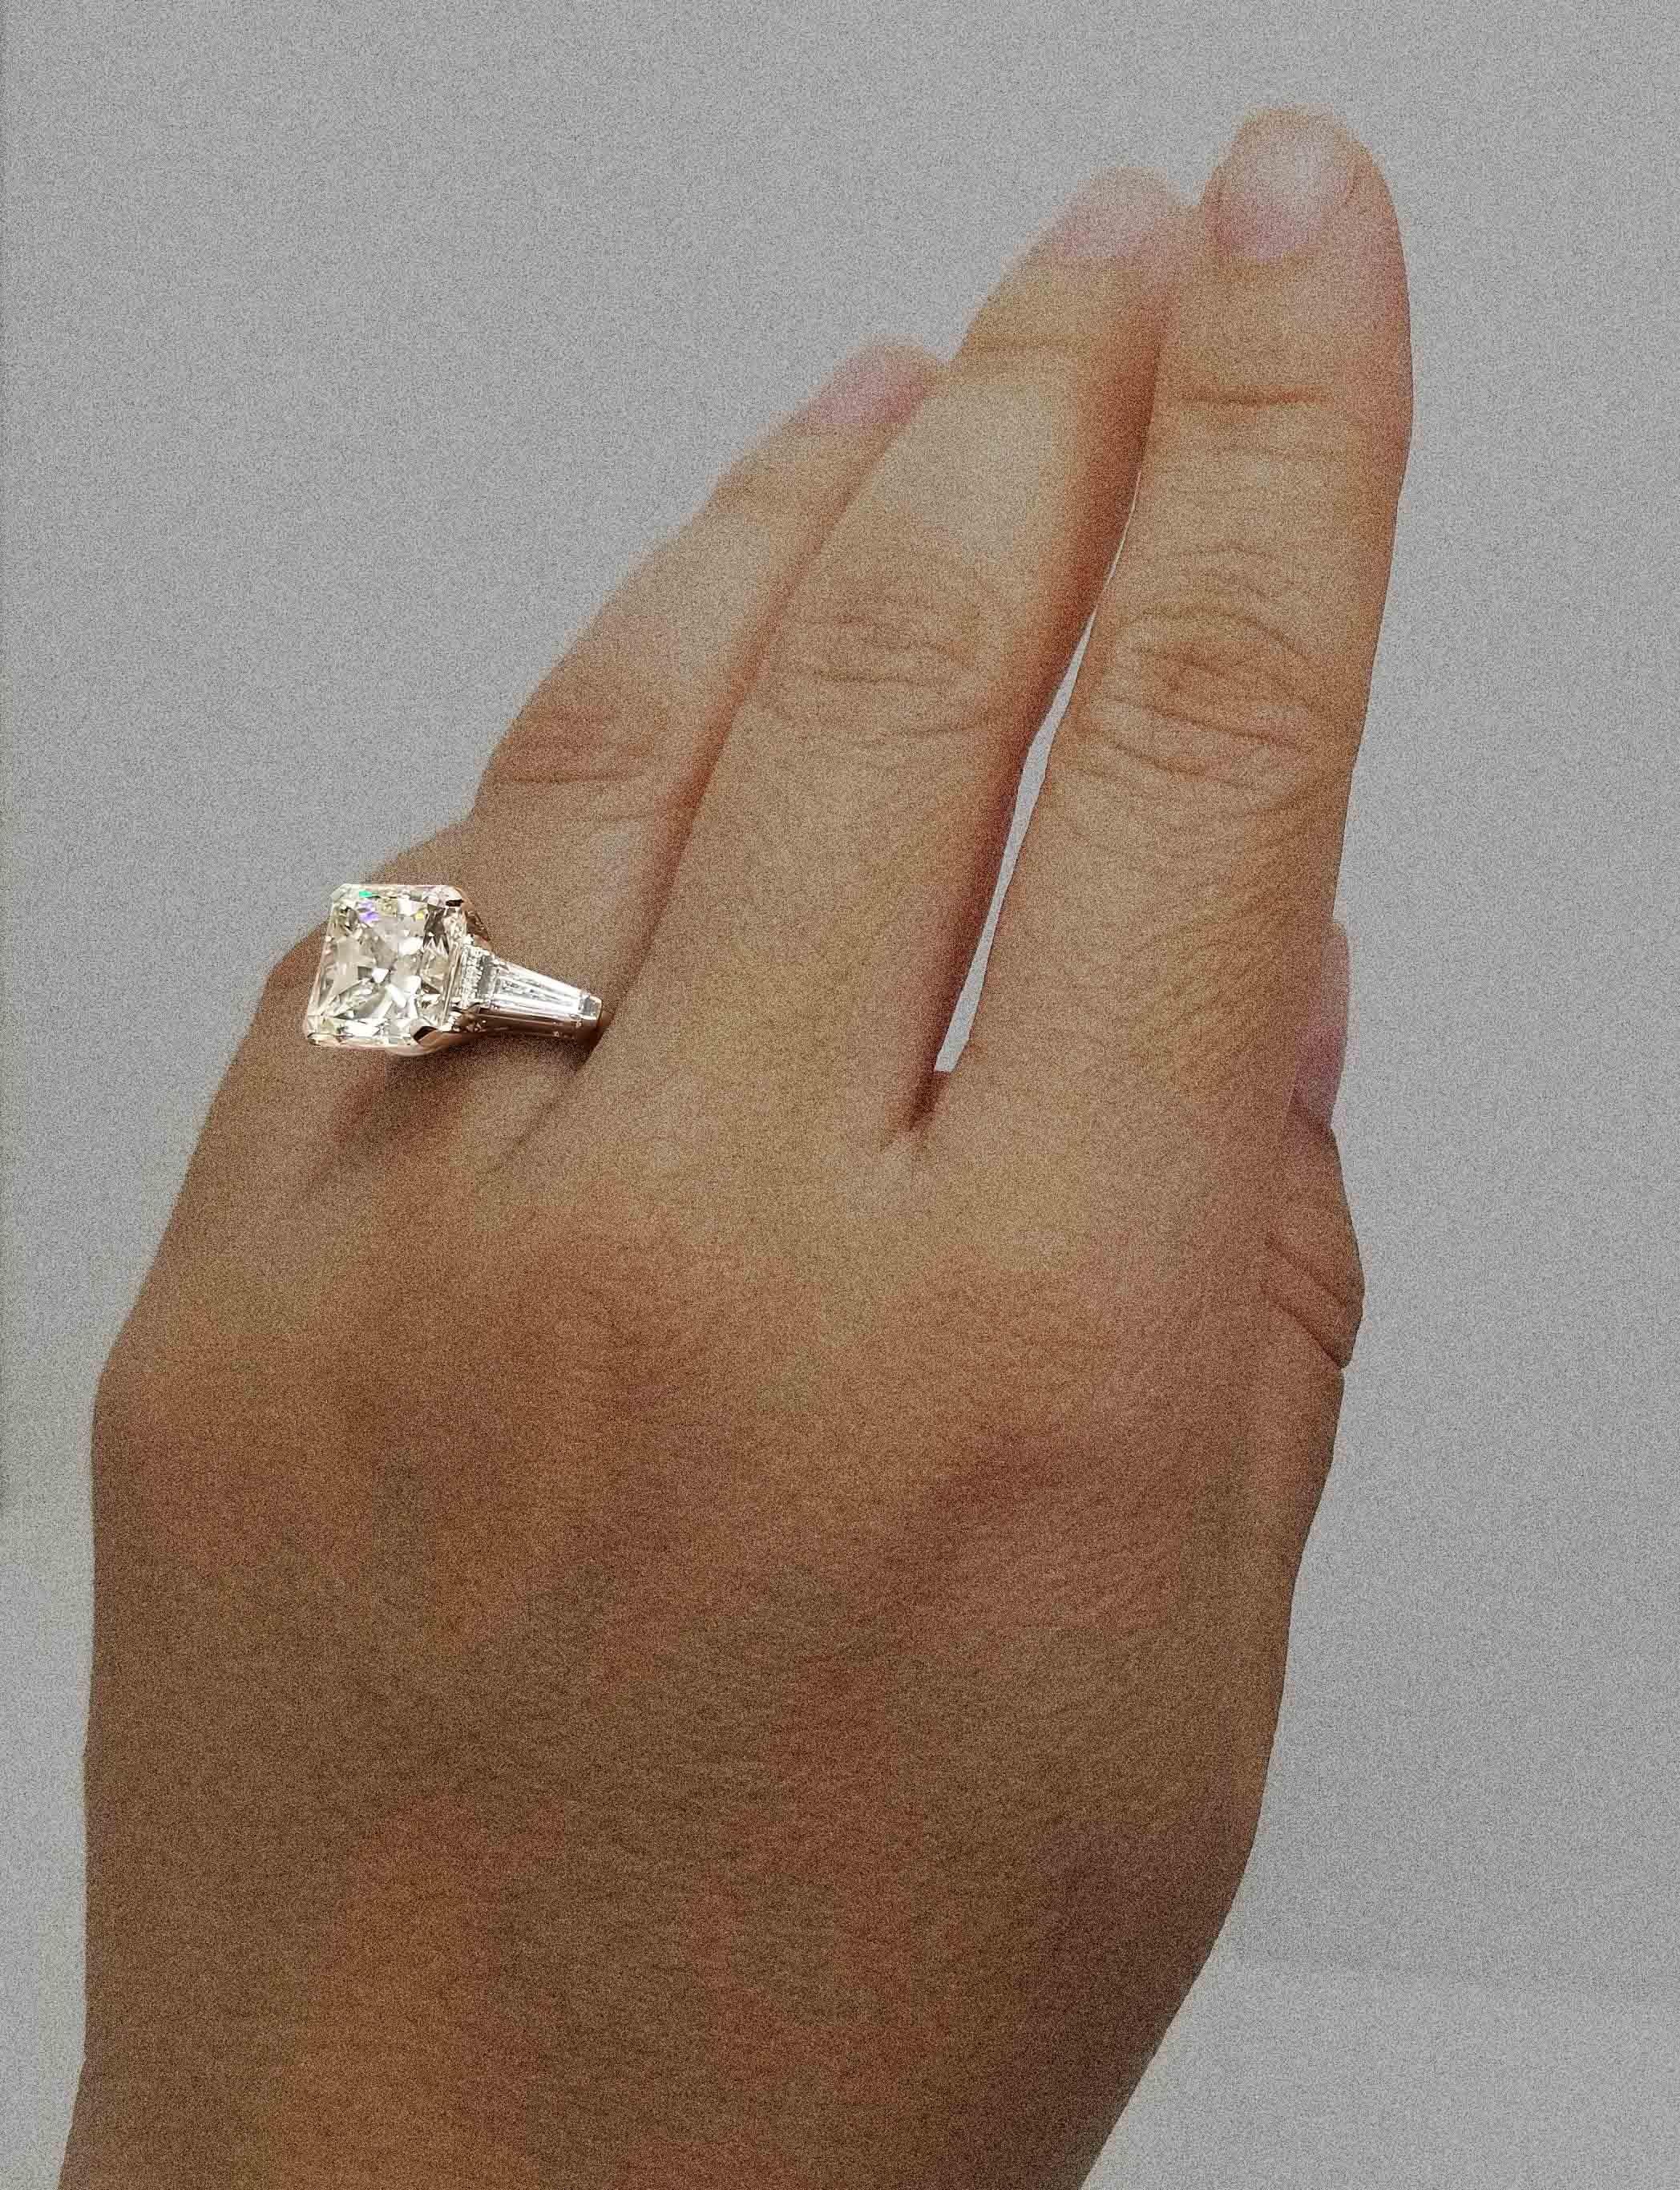 7 Carats Radiant Cut Diamond Engagement Ring in Platinum, IGI 1